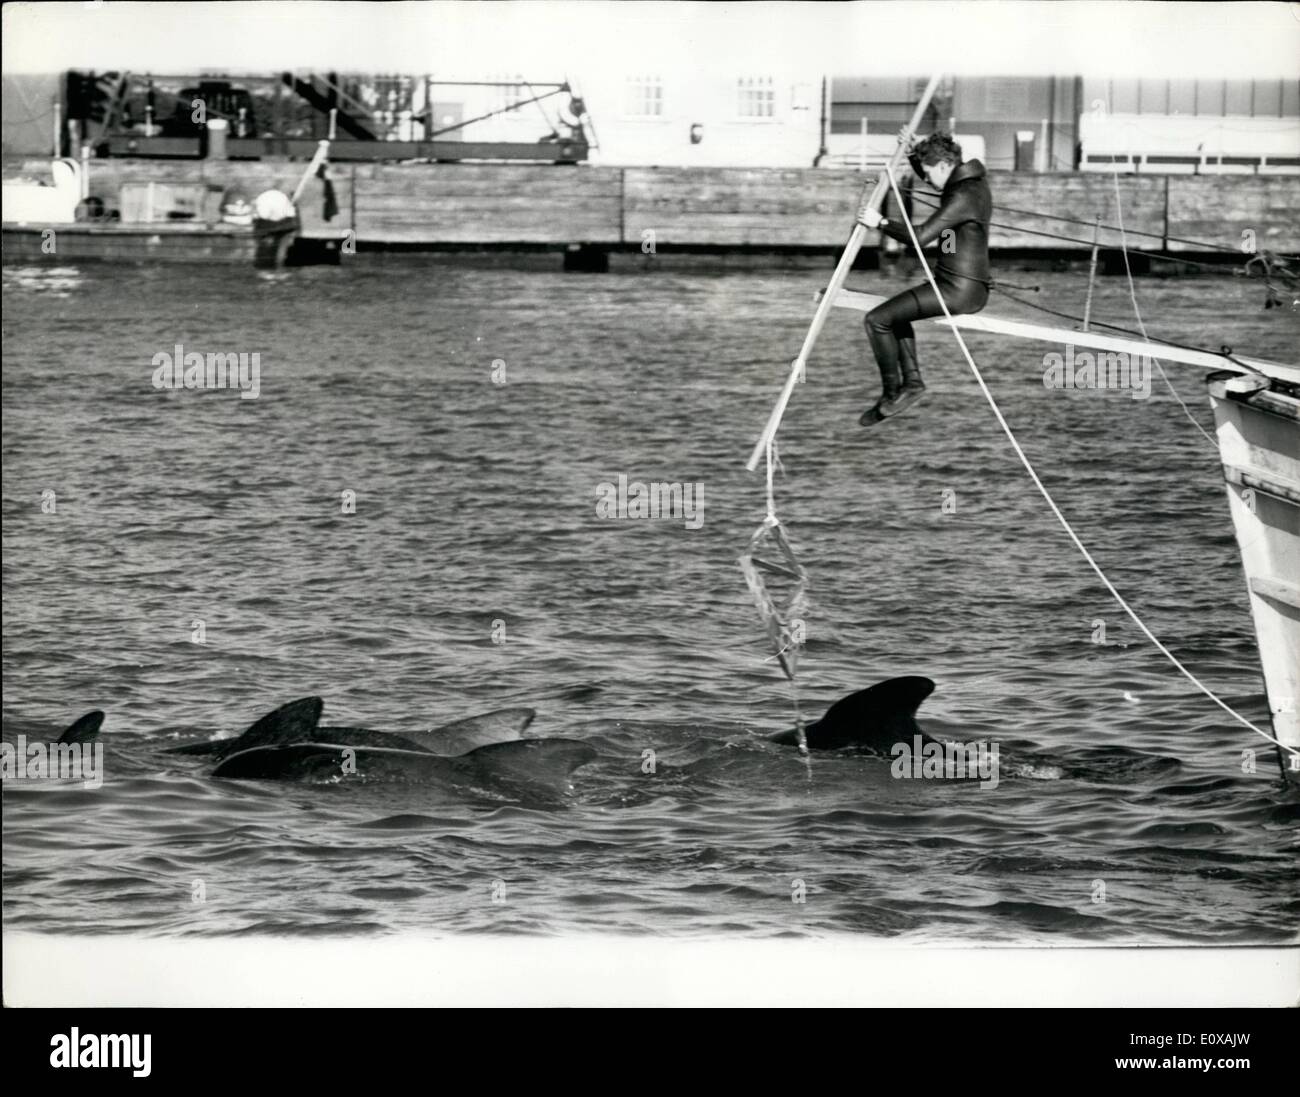 11 novembre 1965 - Whale hunt dans la Tamise ; la première chasse enregistré dans hthe Tamise a été arrêté hier par les policiers de la rivière George, Tirkle. À partir d'un lancement de la police de Tilbury Docks il est monté à bord du bateau qui avait été la chasse aux baleines pilotes première vue dans la Tamise il y a quinze jours,( bien qu'au début, ils étaient considérés comme les marsouins)Il a dit ''ces baleines morts ou vivants, sont les , des ports par des lois, fobidding l'assassinat d'un piégeage capture capture d'animaux dans la région. Le chasseur de baleine était John Sadler 30 ans plongeur professionnel et dolphin trainer Banque D'Images